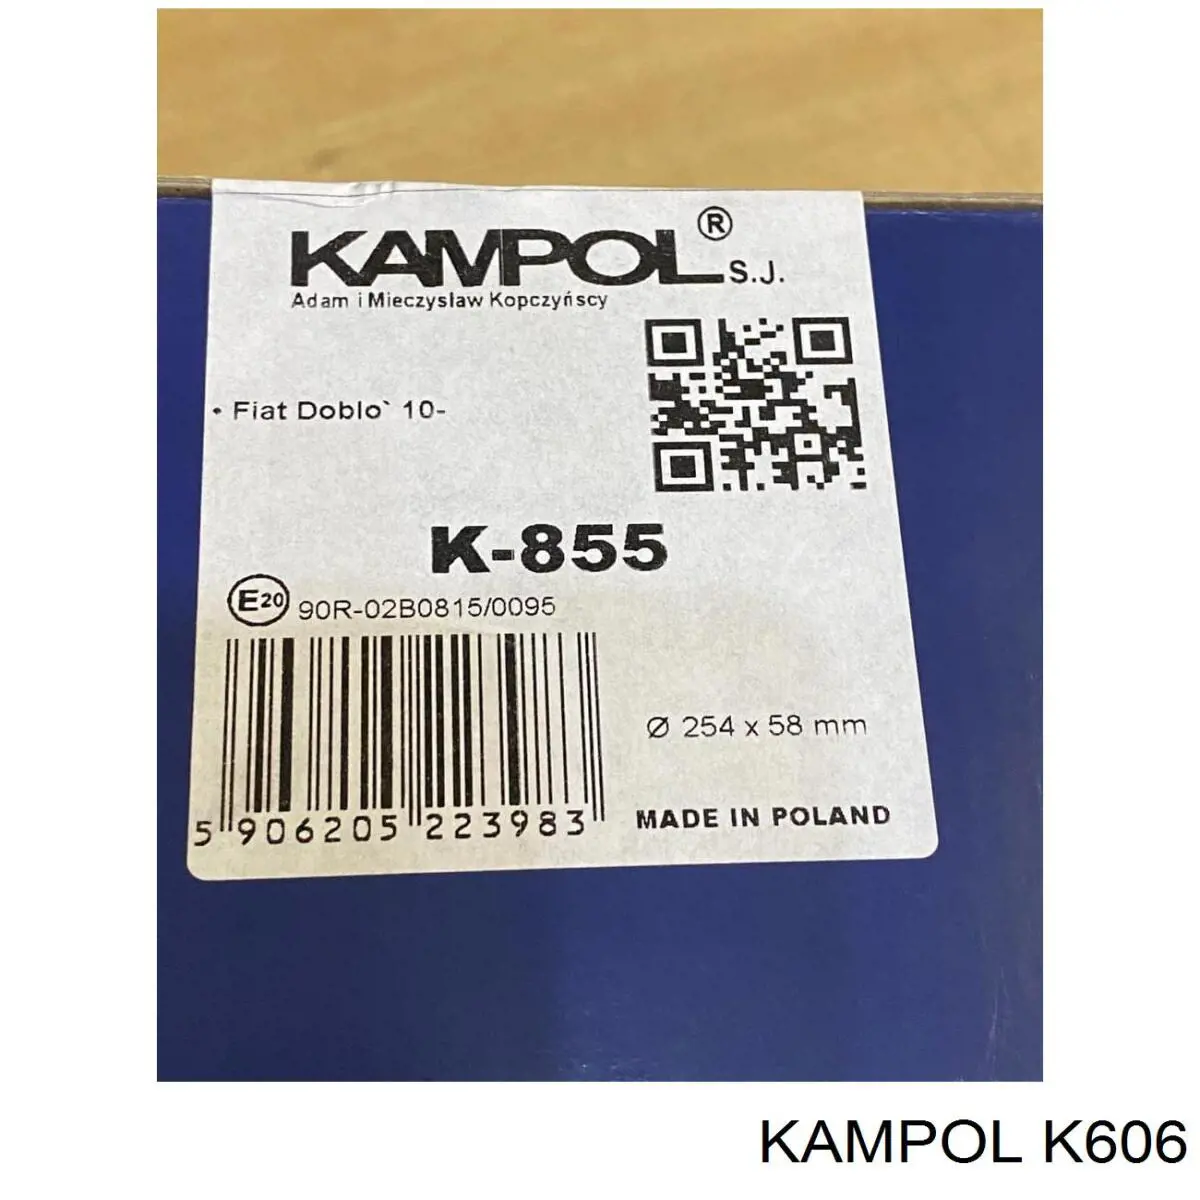 K-606 Kampol zapatas de frenos de tambor traseras